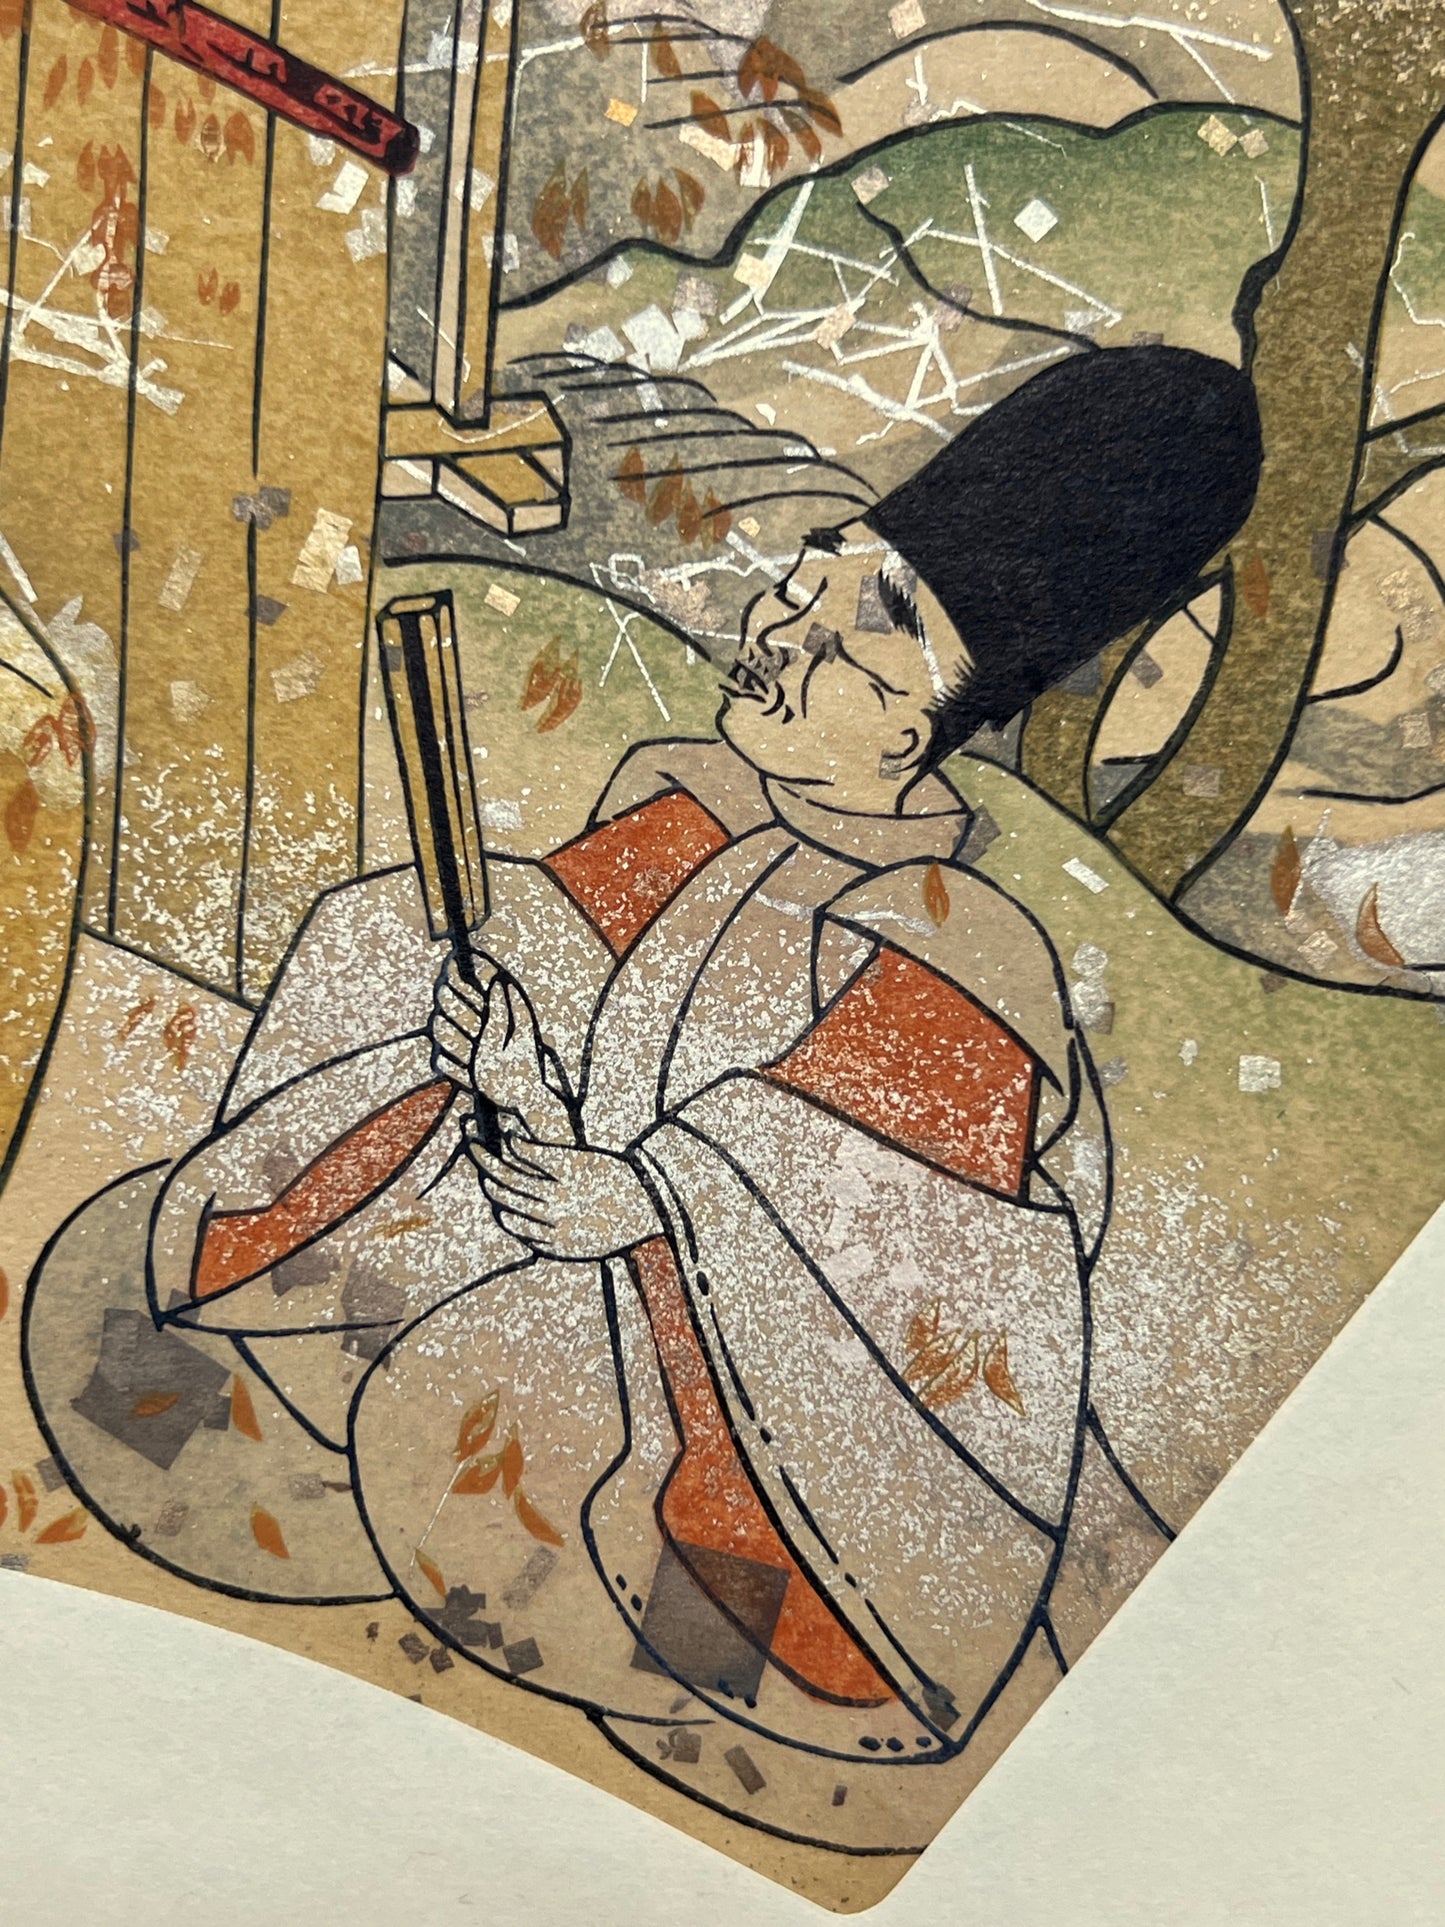 Estampe japonaise en forme d'éventail parsemée de fragments d'or et d'argent, gros plan sur un homme qui chante en tenant un éventail replié.